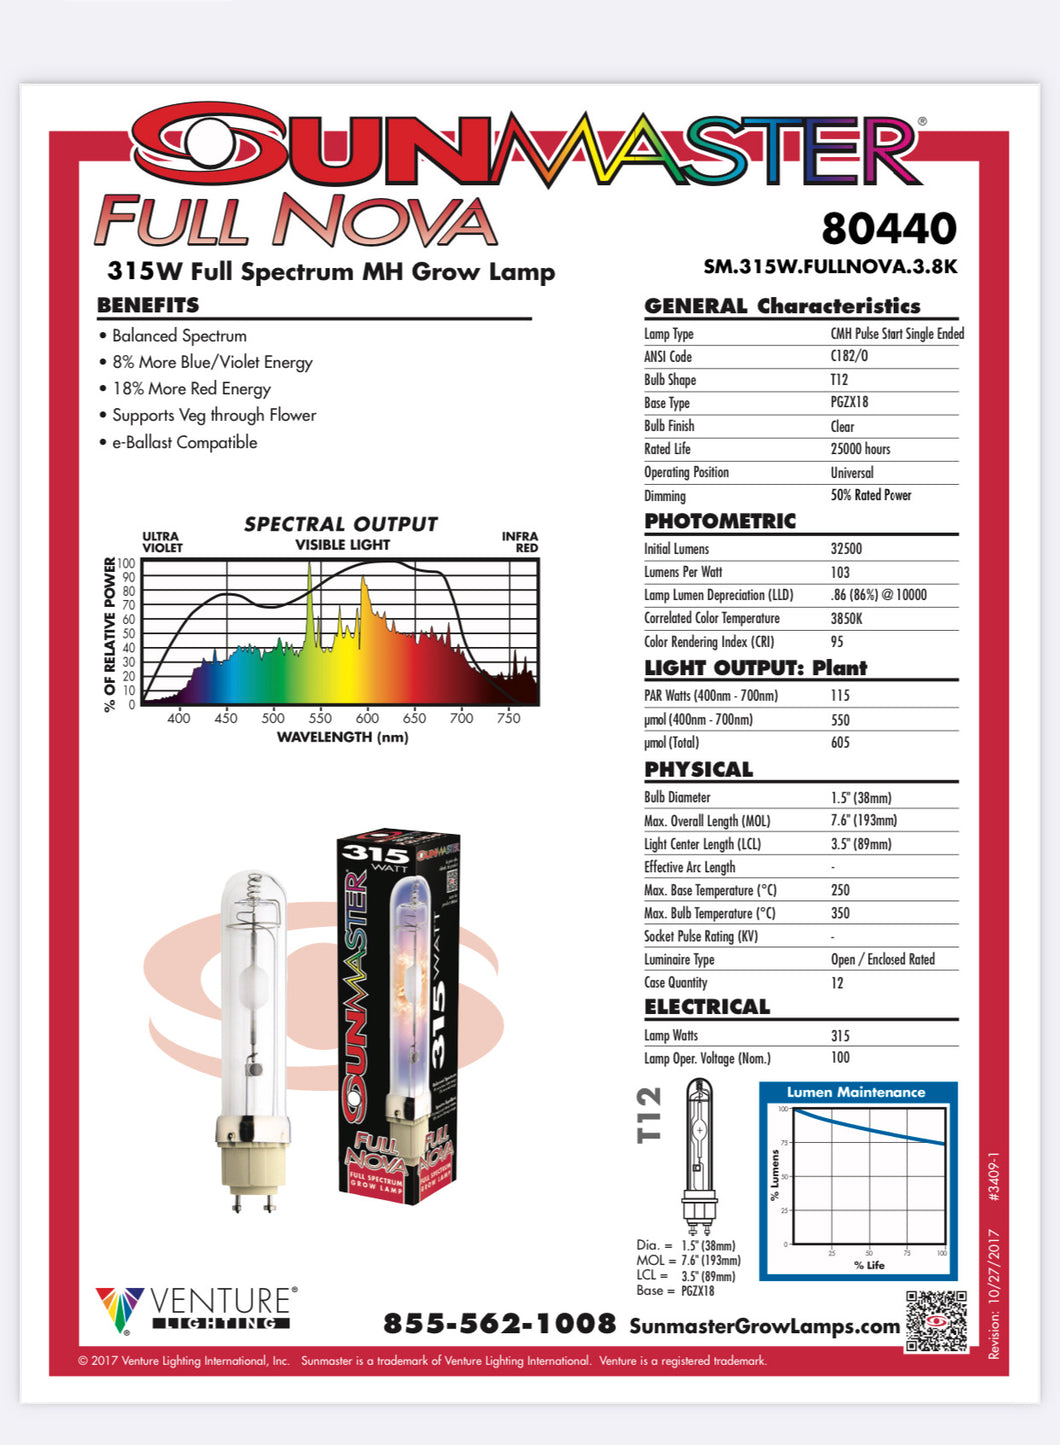 Full Nova 315w Full Spectrum Light